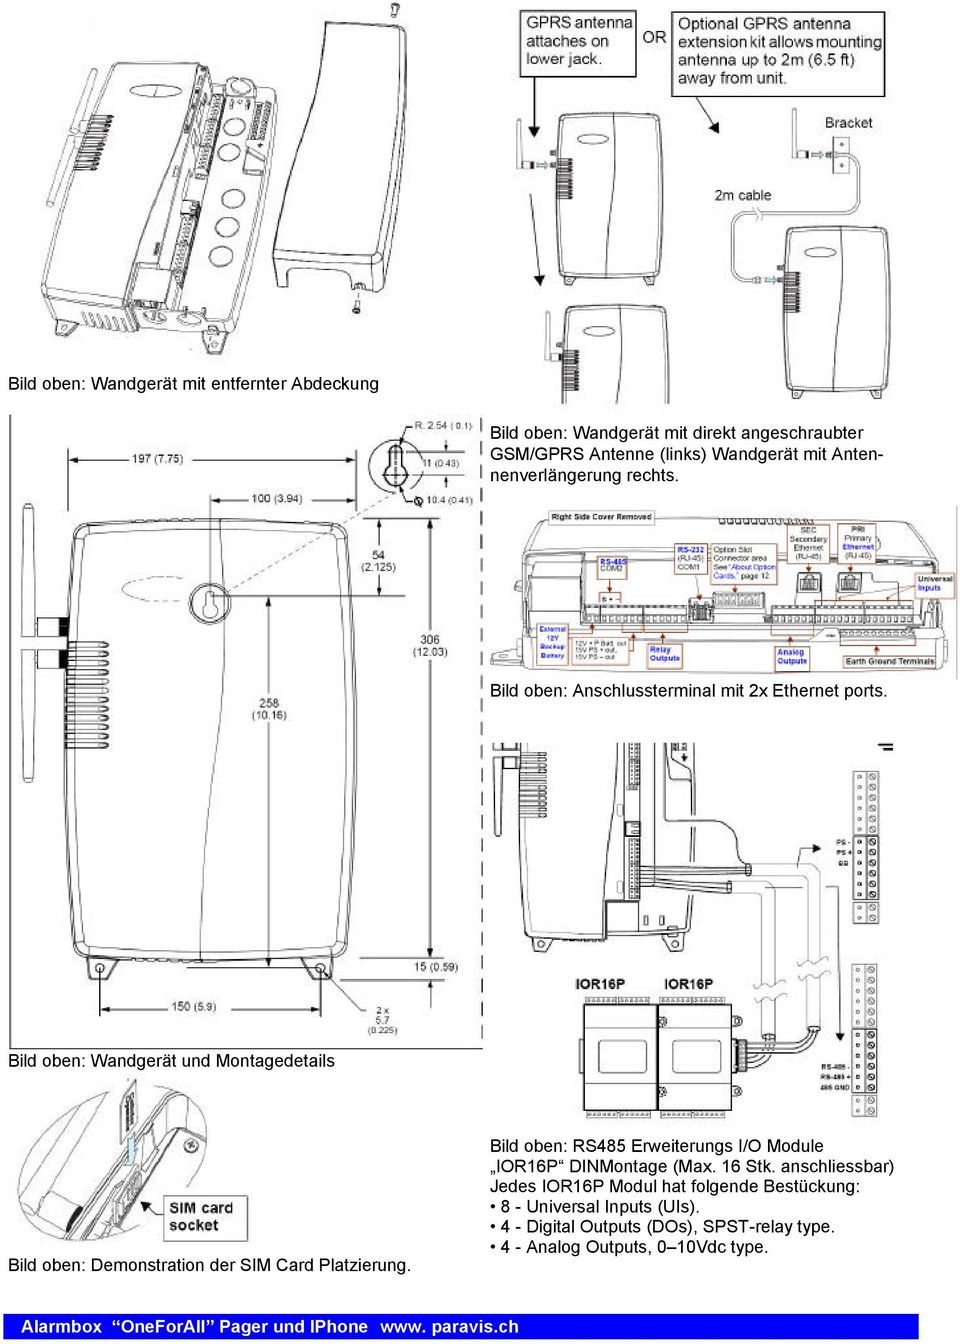 Bild oben: Wandgerät und Montagedetails Bild oben: Demonstration der SIM Card Platzierung.